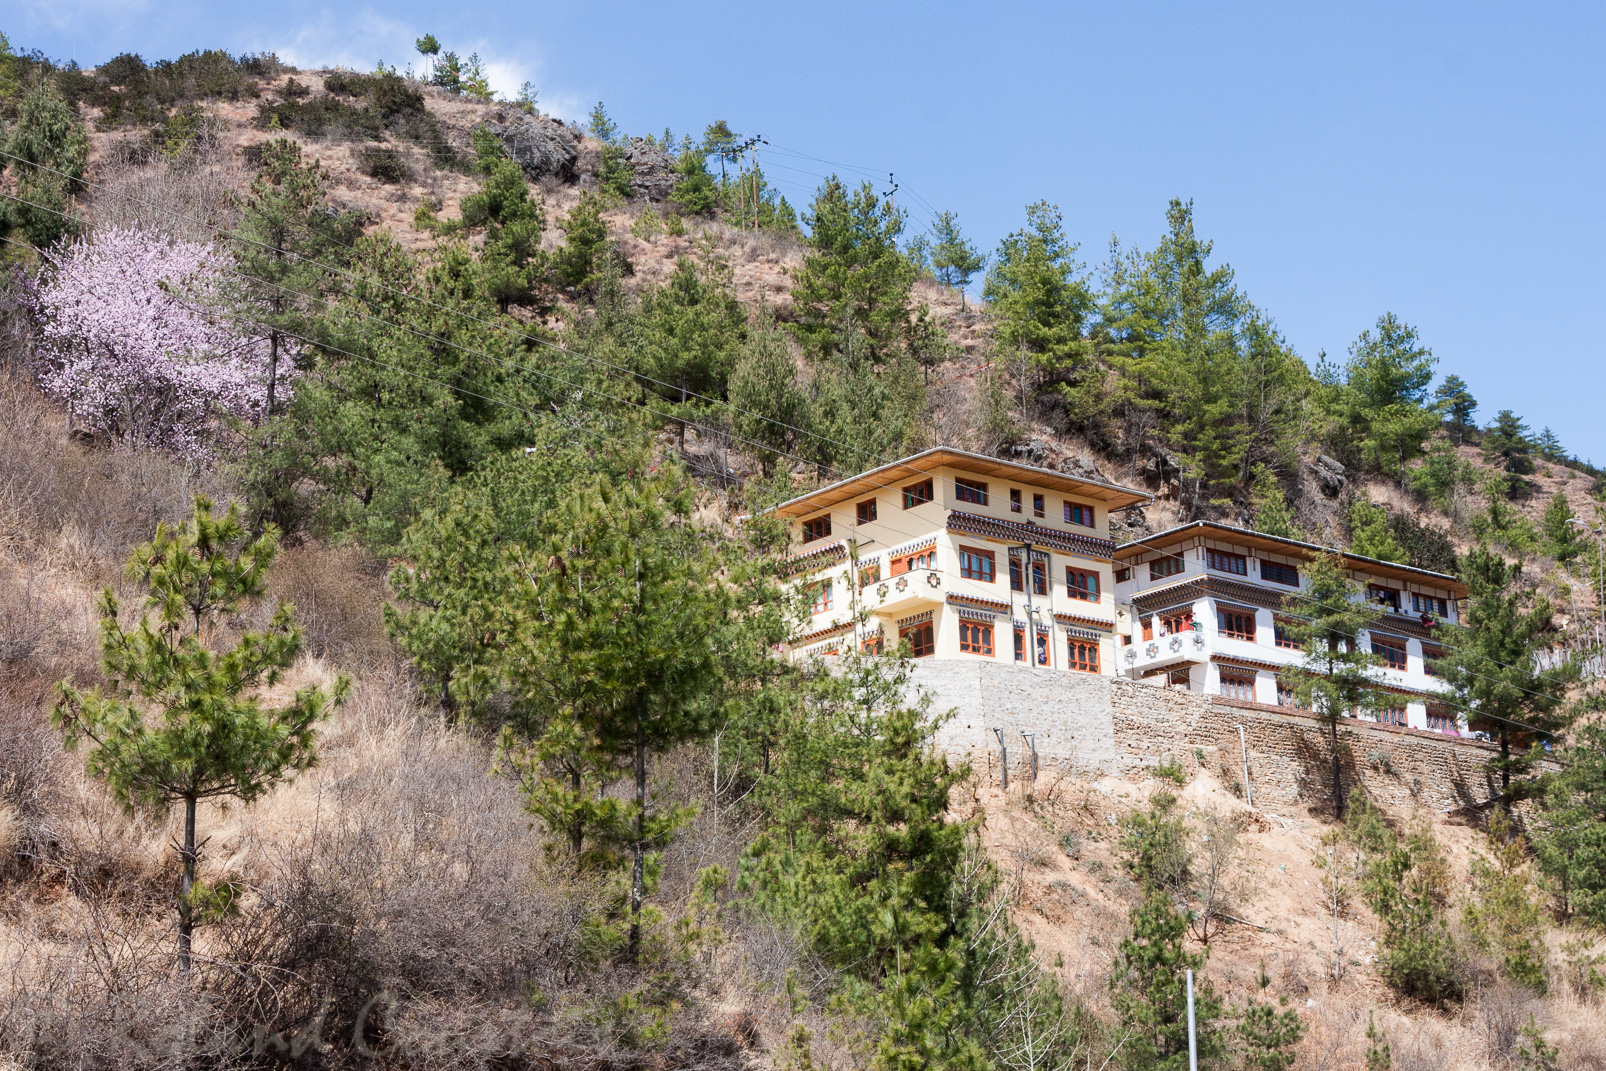 Maisons neuves bhoutanaises toujours décorées à l'ancienne.